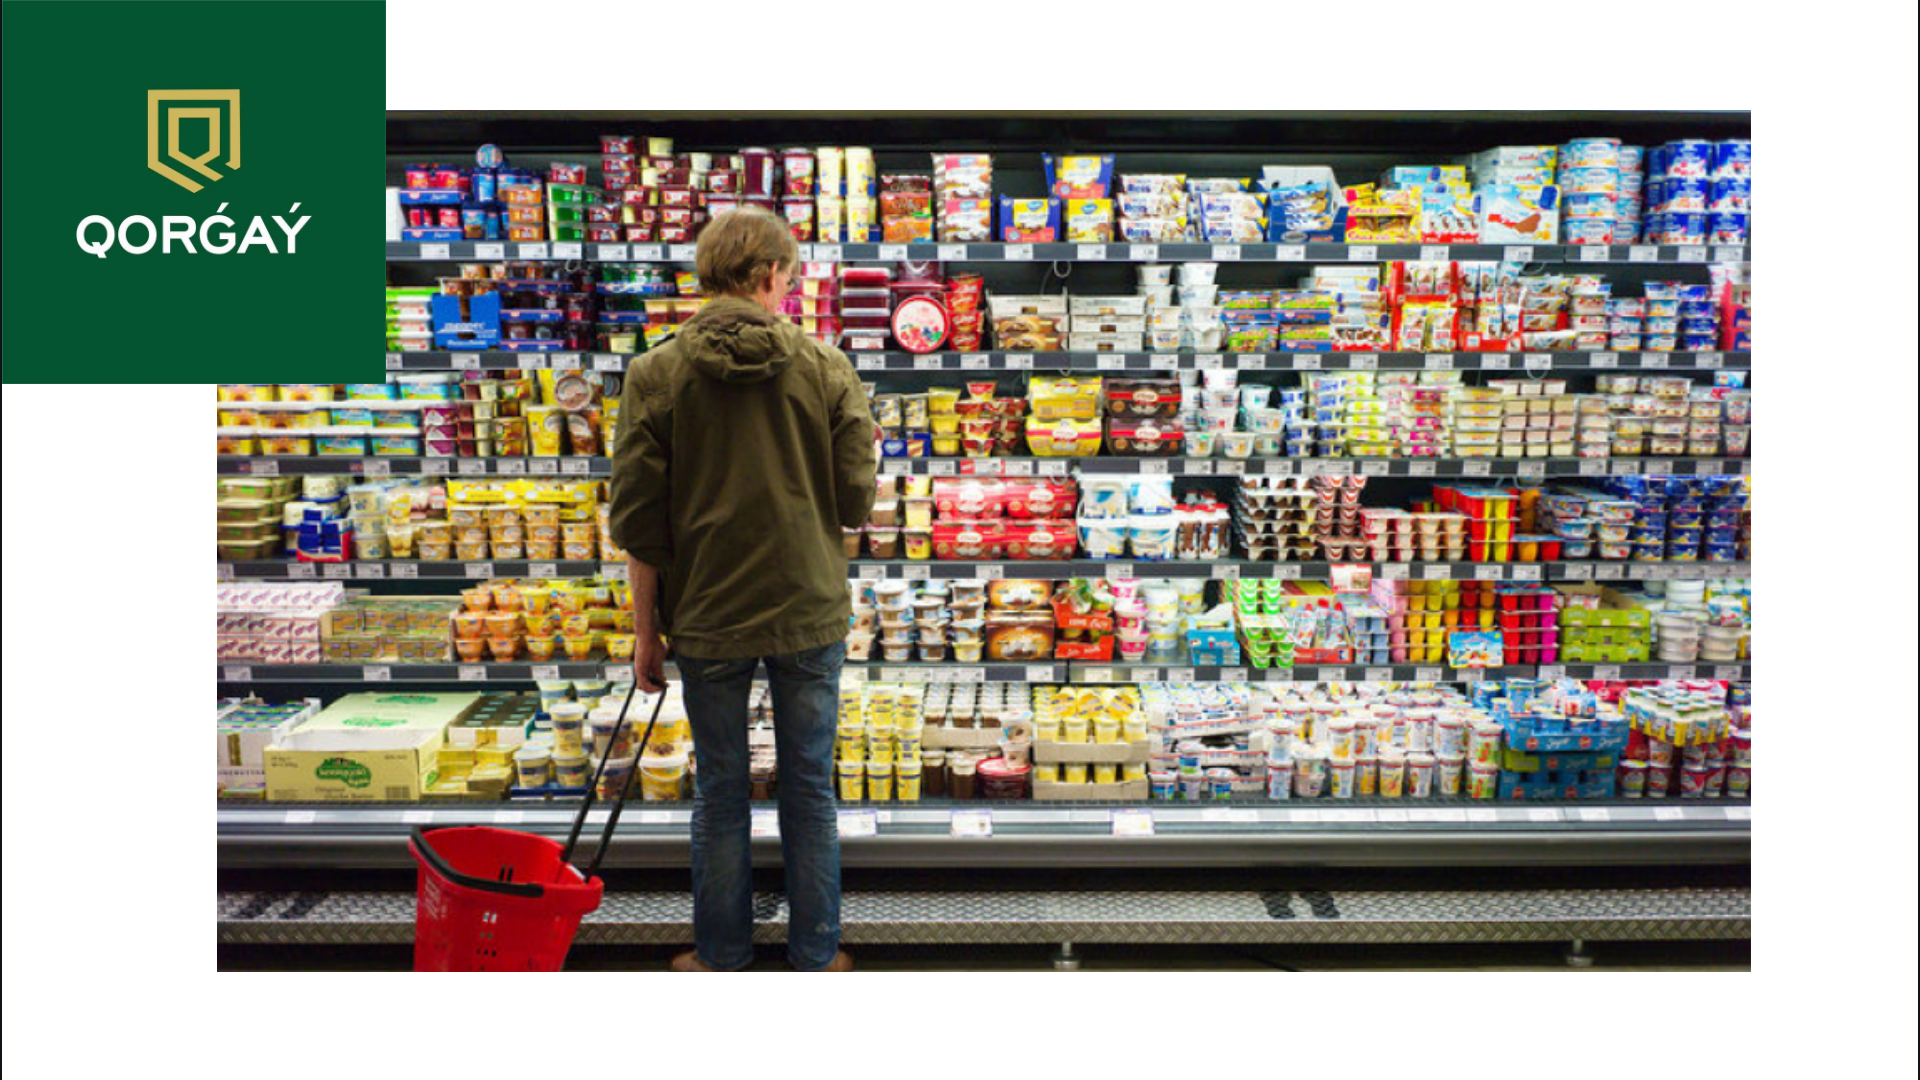 Как потребителю защитить свои права в продовольственном магазине, если ценники не совпадают с ценой на кассе?